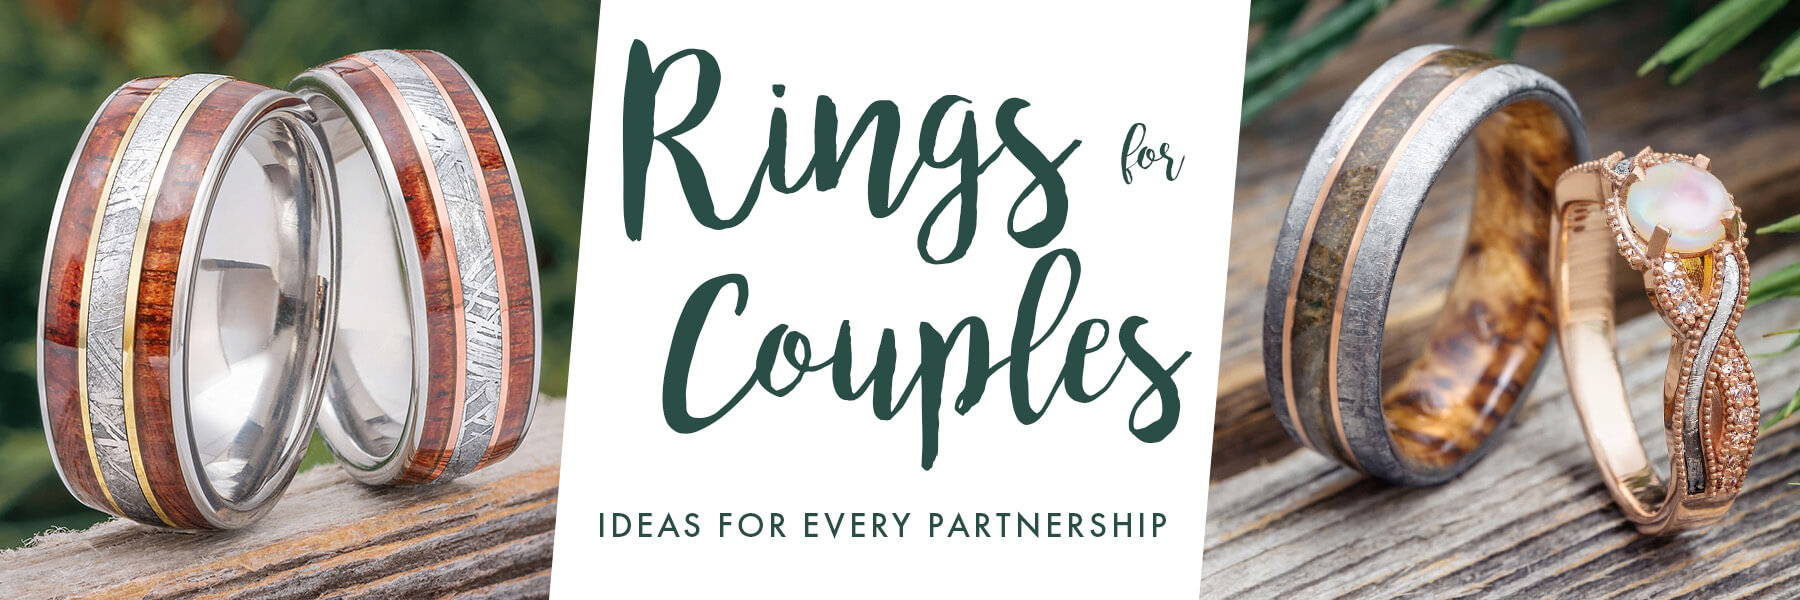 Couple engagement rings | Engagement rings couple, Engagement couple, Ring  designs